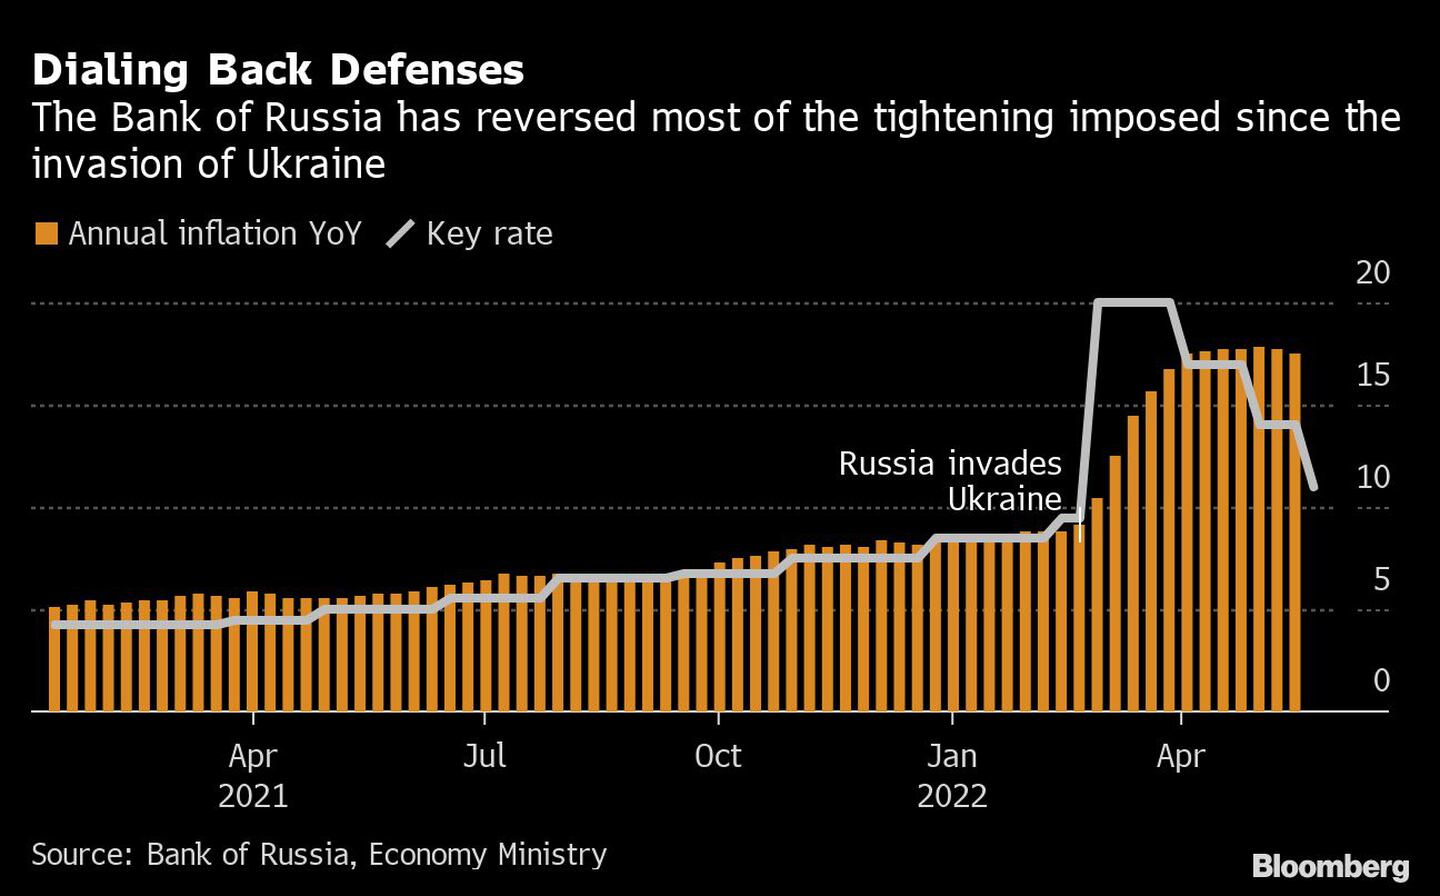 El Banco de Rusia ha revertido la mayor parte del endurecimiento impuesto desde la invasión del país a Ucraniadfd